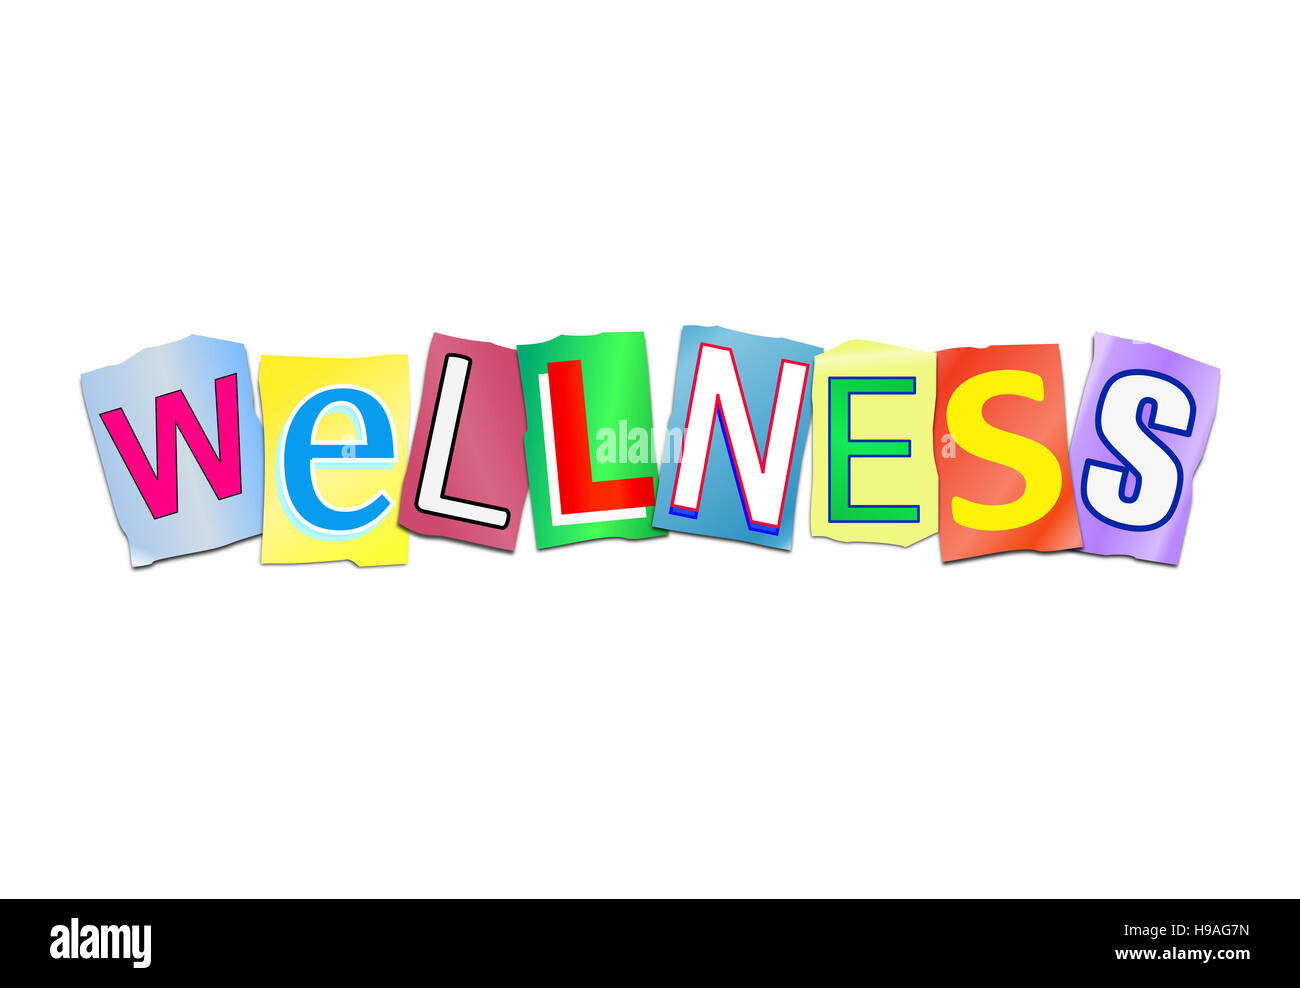 Abbildung zeigt eine Reihe von ausgeschnittenen gedruckte Buchstaben angeordnet, um das Wort Wellness bilden. Stockfoto